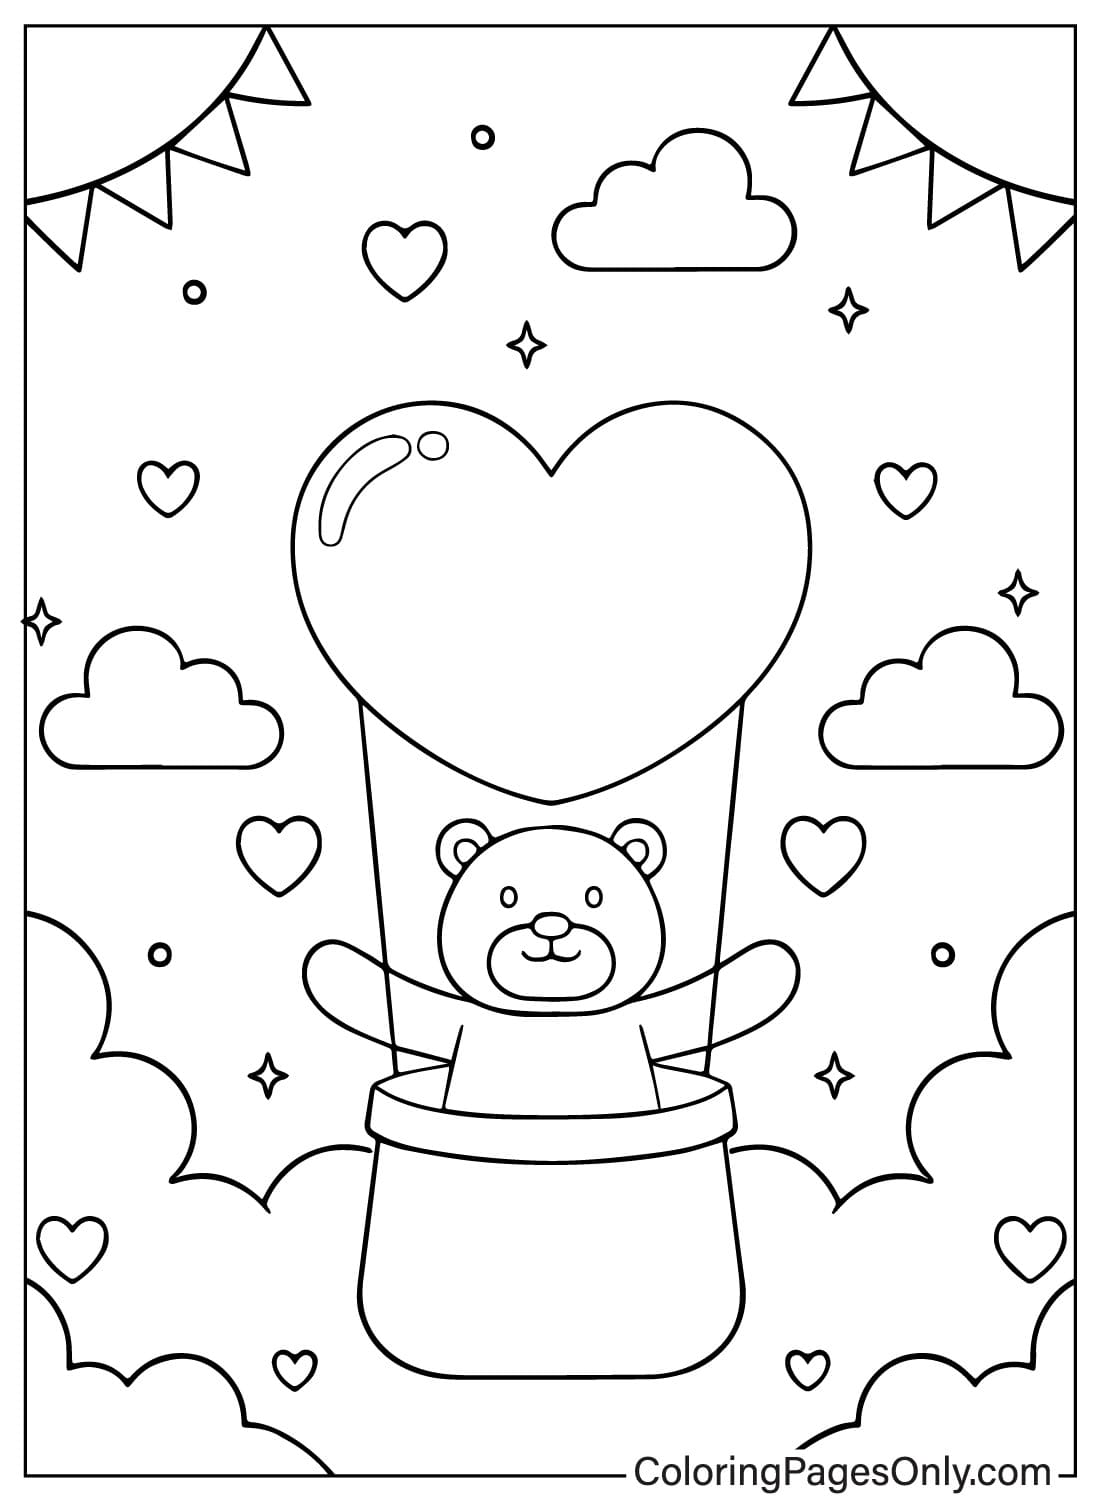 Página para colorir grátis do ursinho de pelúcia da Teddy Bear